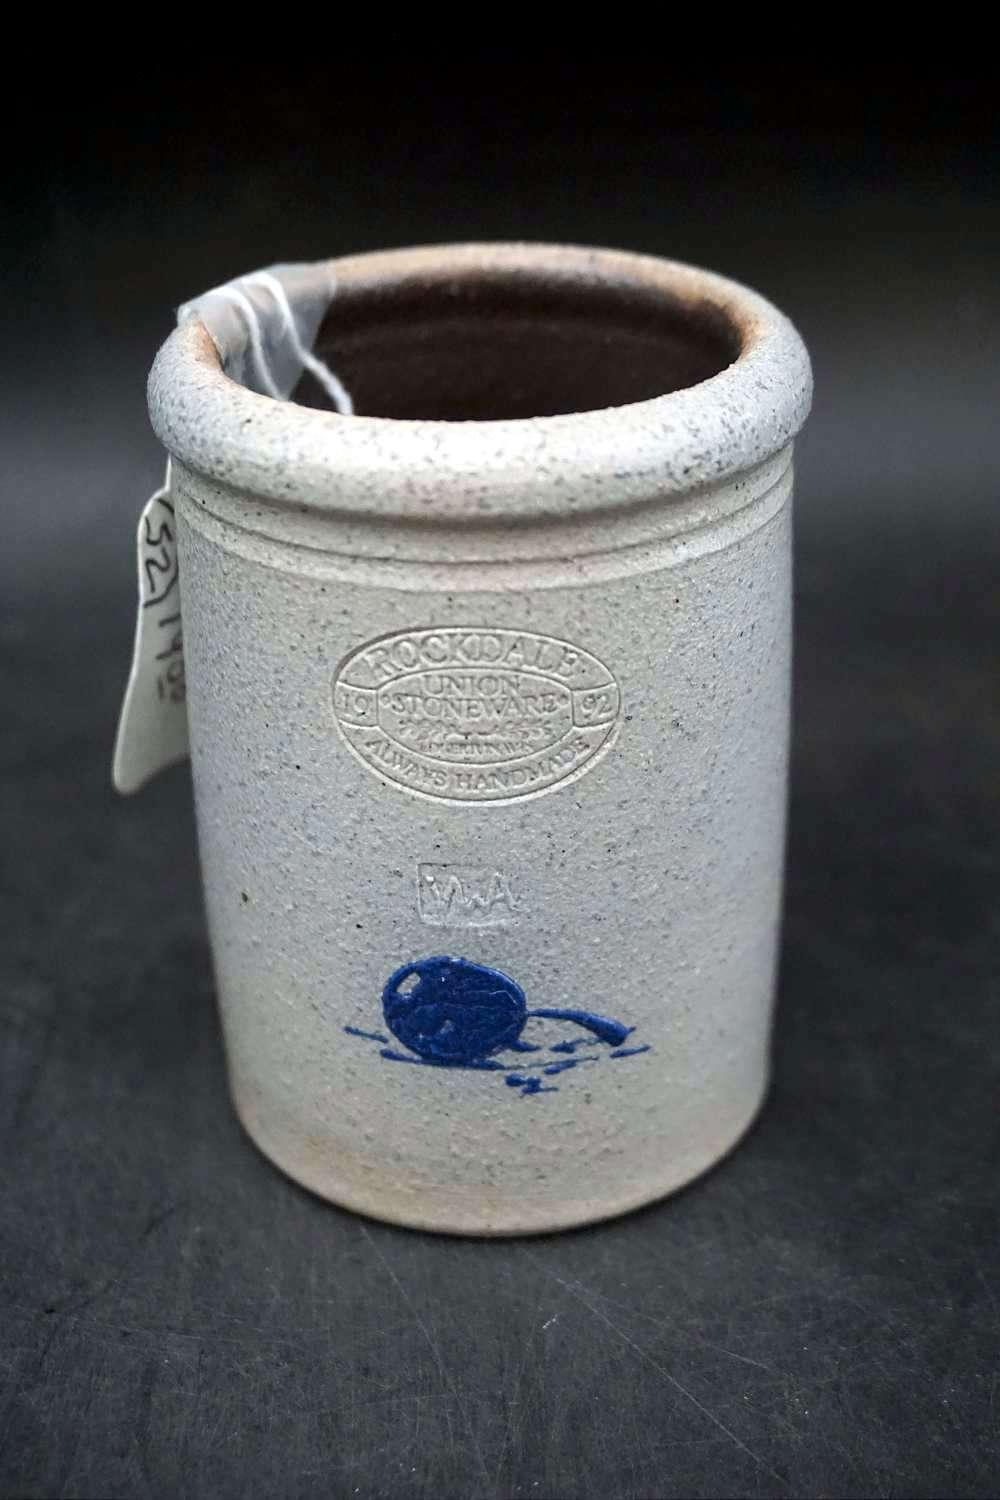 1992 Rockdale Union stoneware salt glazed miniature crocks.